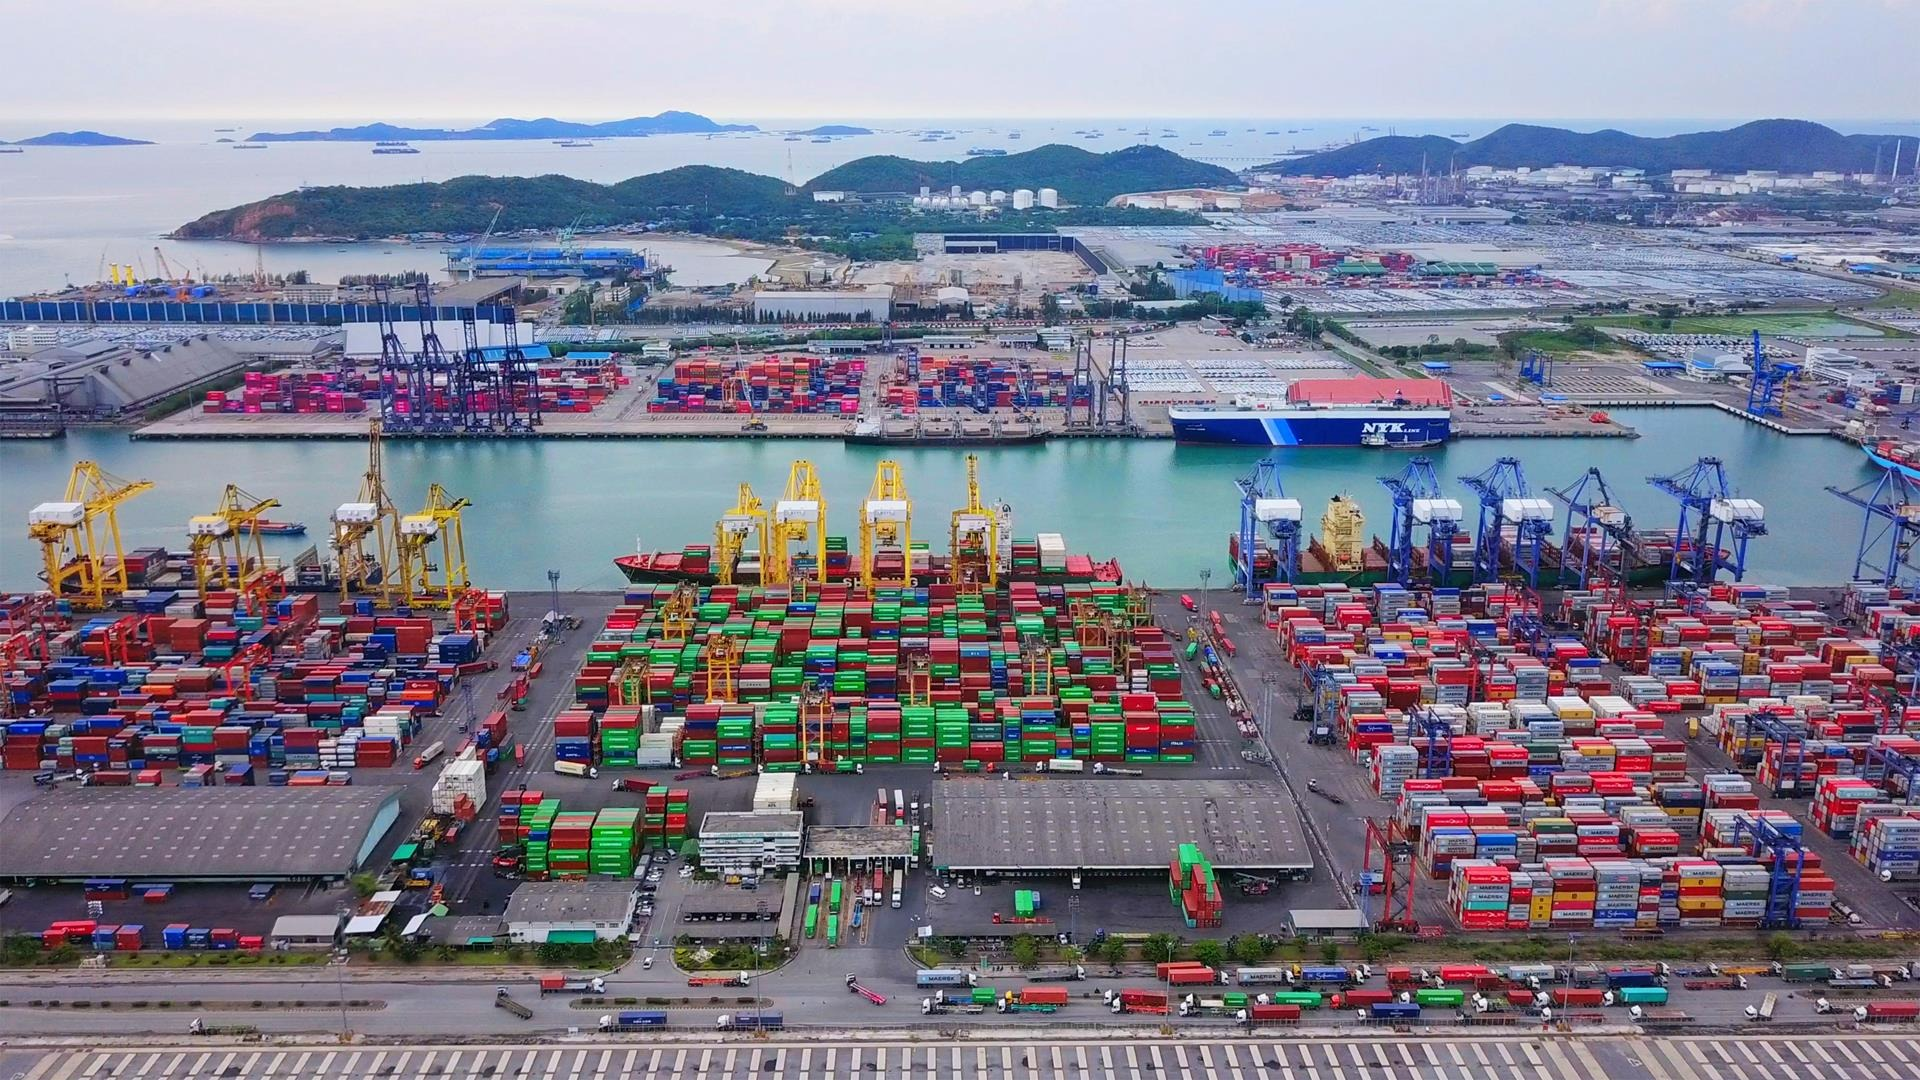 Port kontenerowy w singapurze. Przeładunek towarów w transporcie morskim - spedycja morska